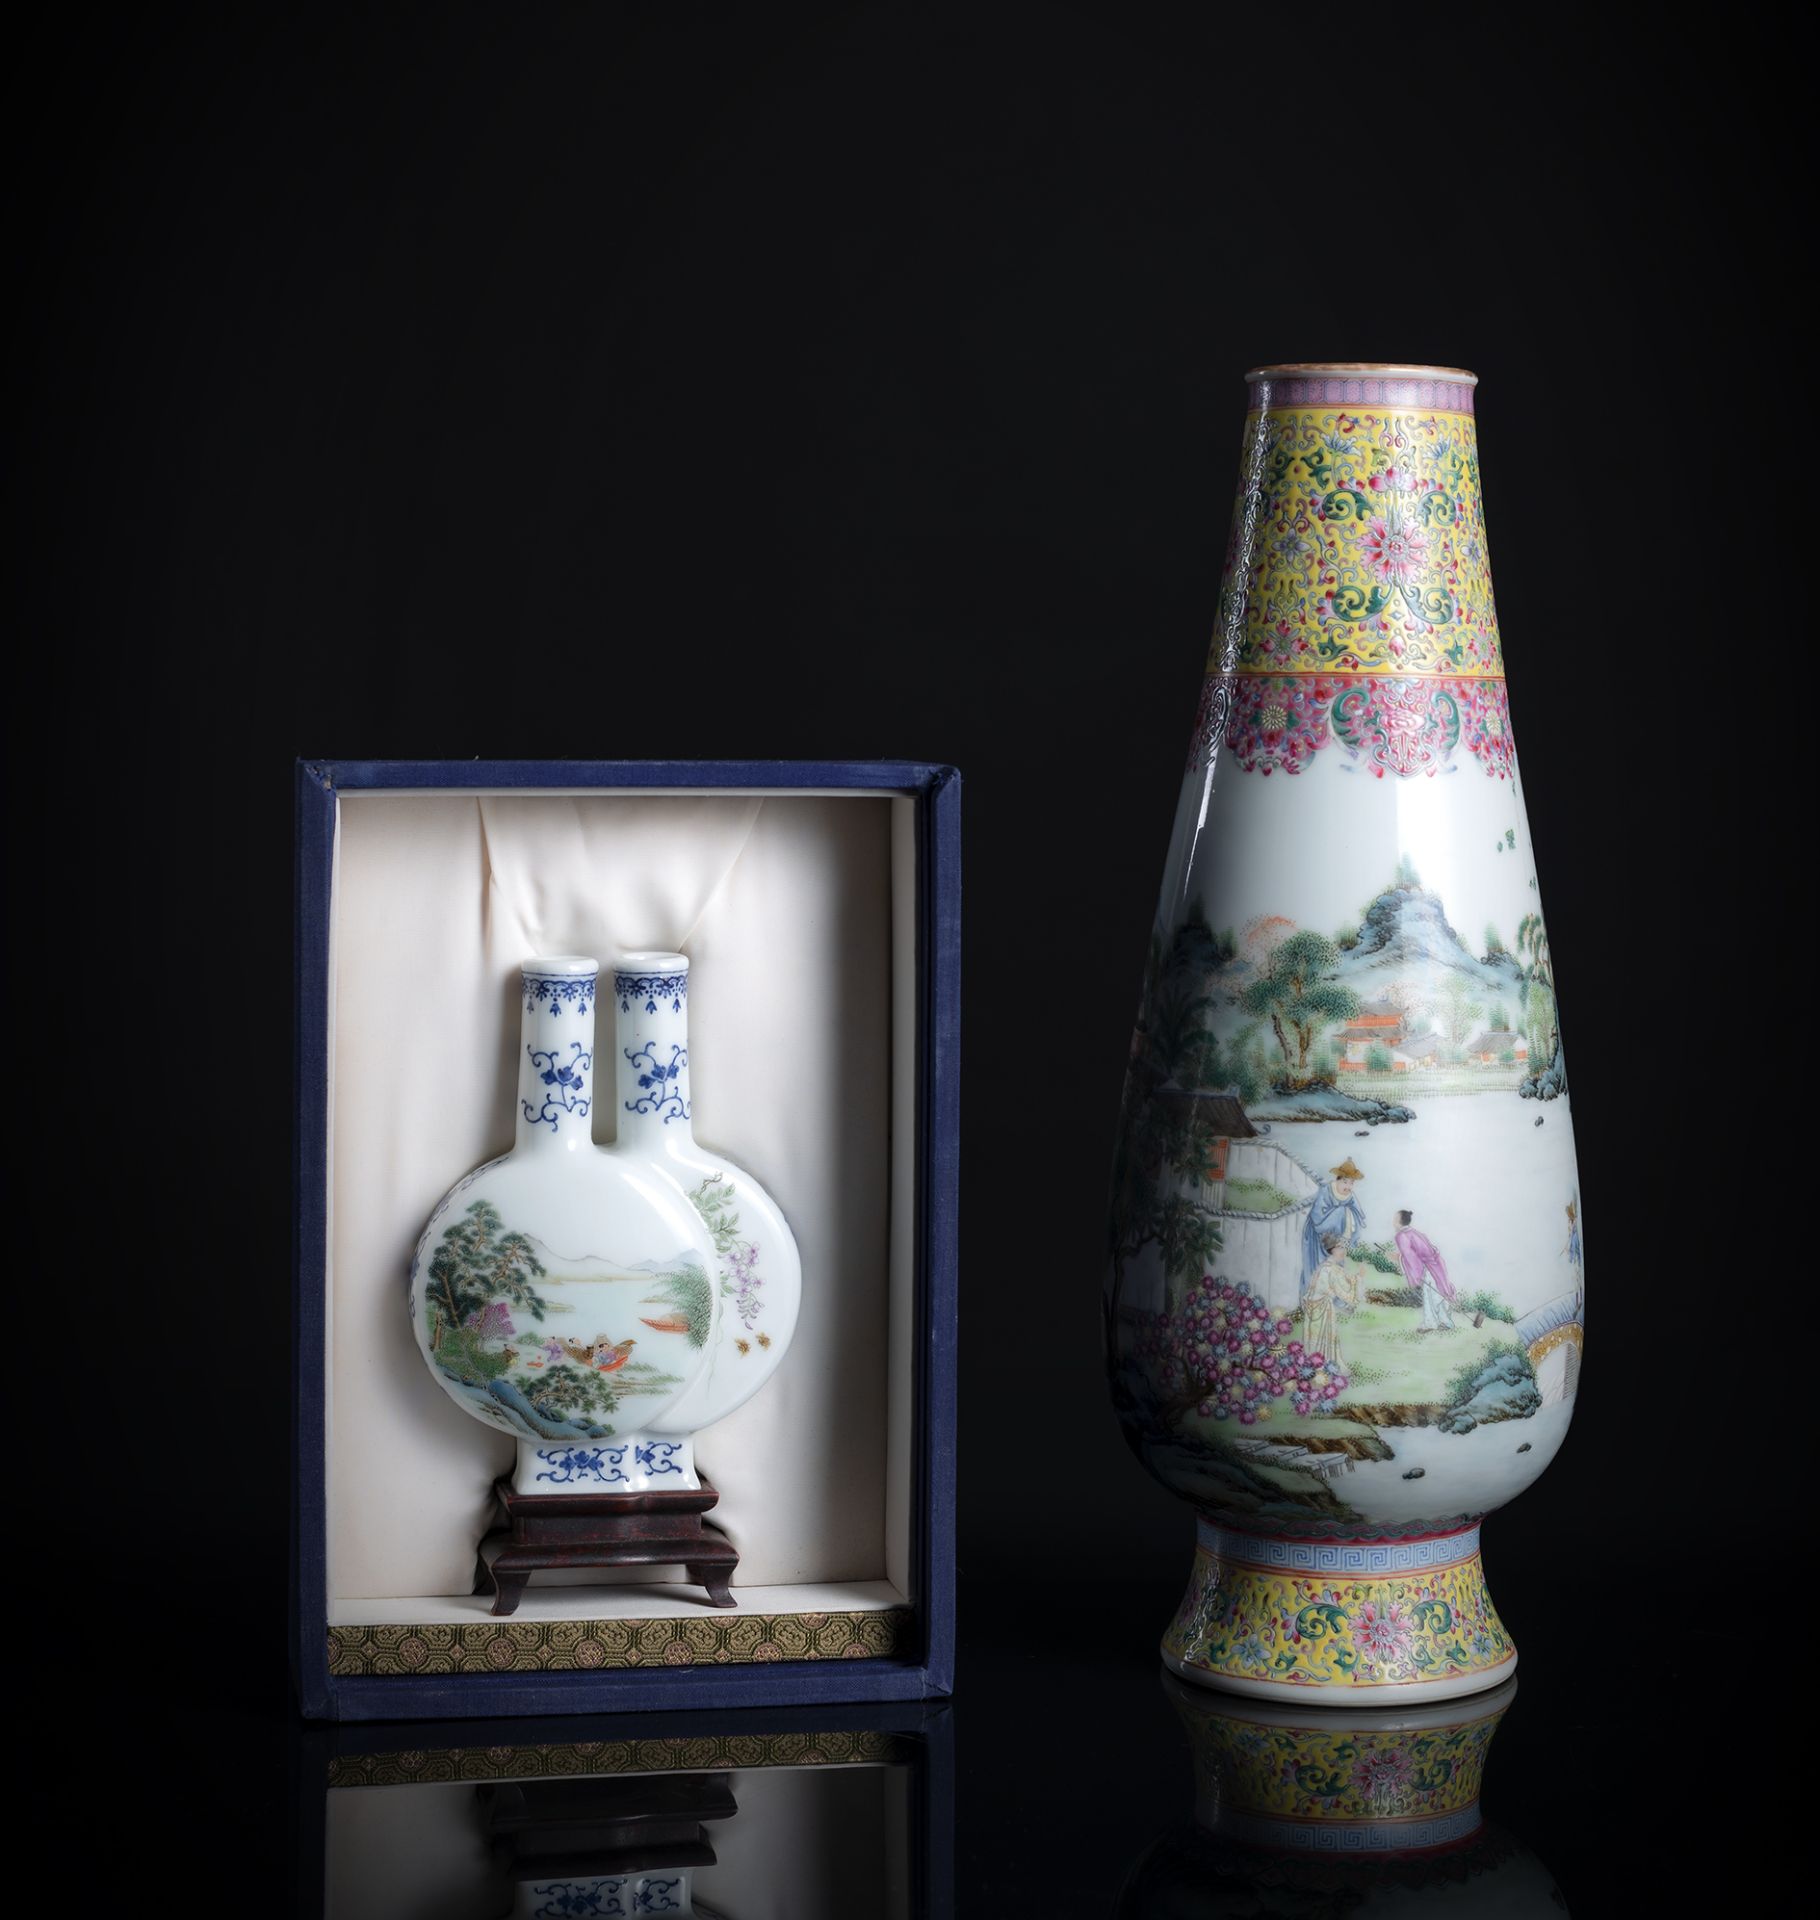 Doppelvase aus Porzellan in Stoff-Box und 'Famille rose'-Vase mit Landschaftsdekor